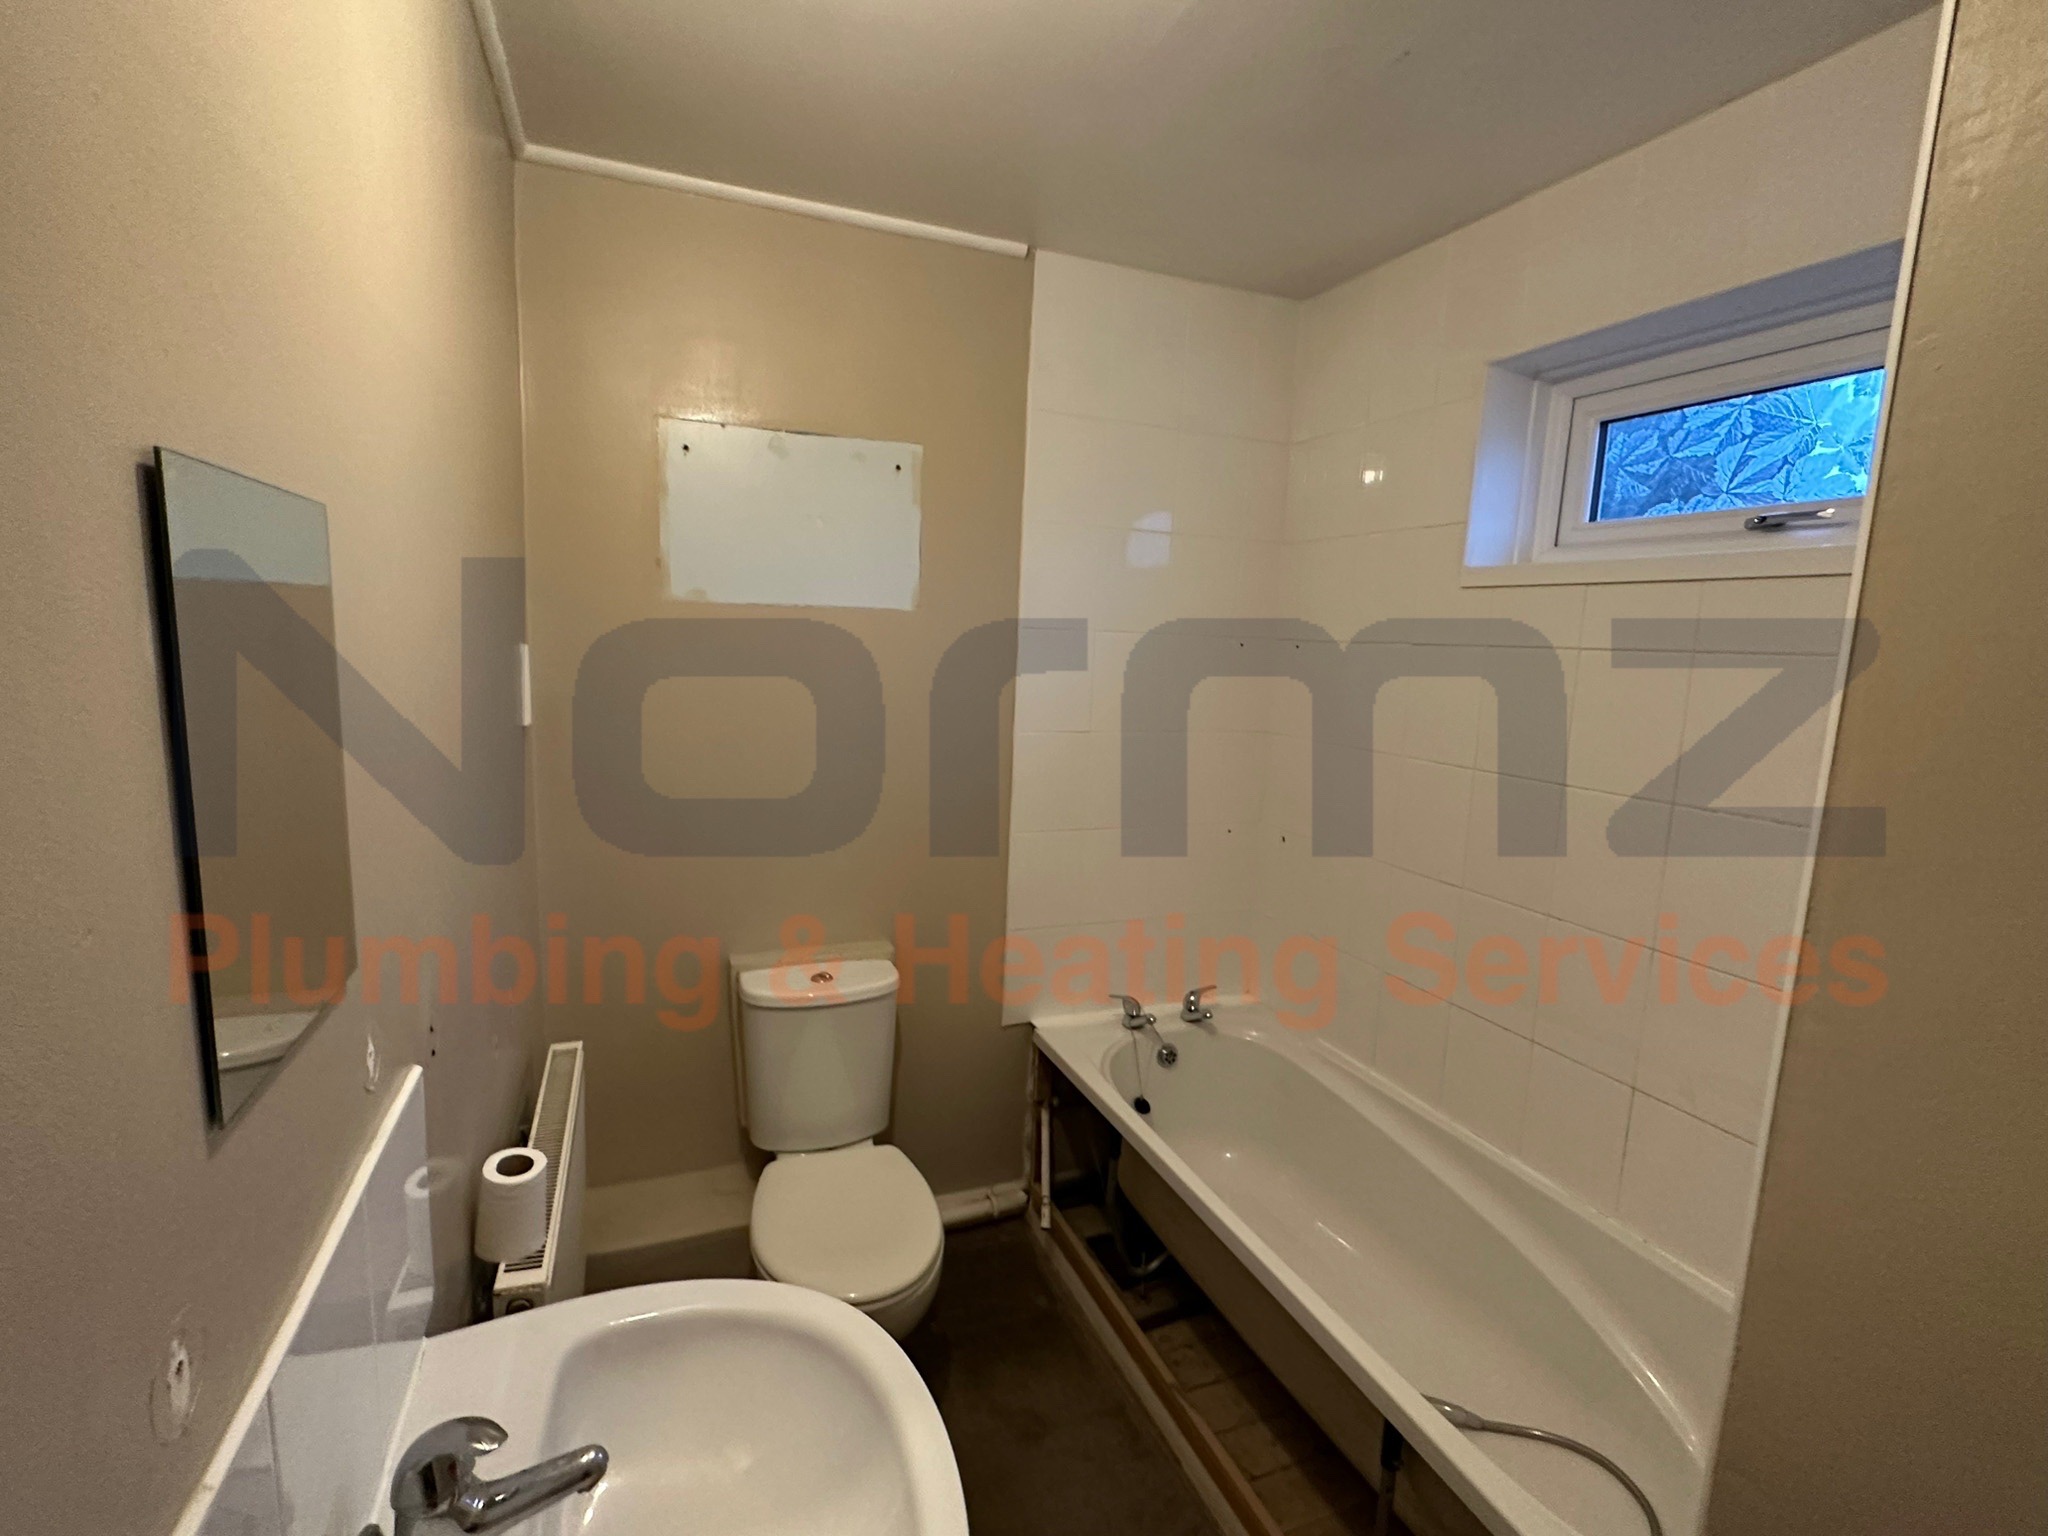 Bathroom Fitters in Rushden Before Bathroom Renovation - Normz Plumbing